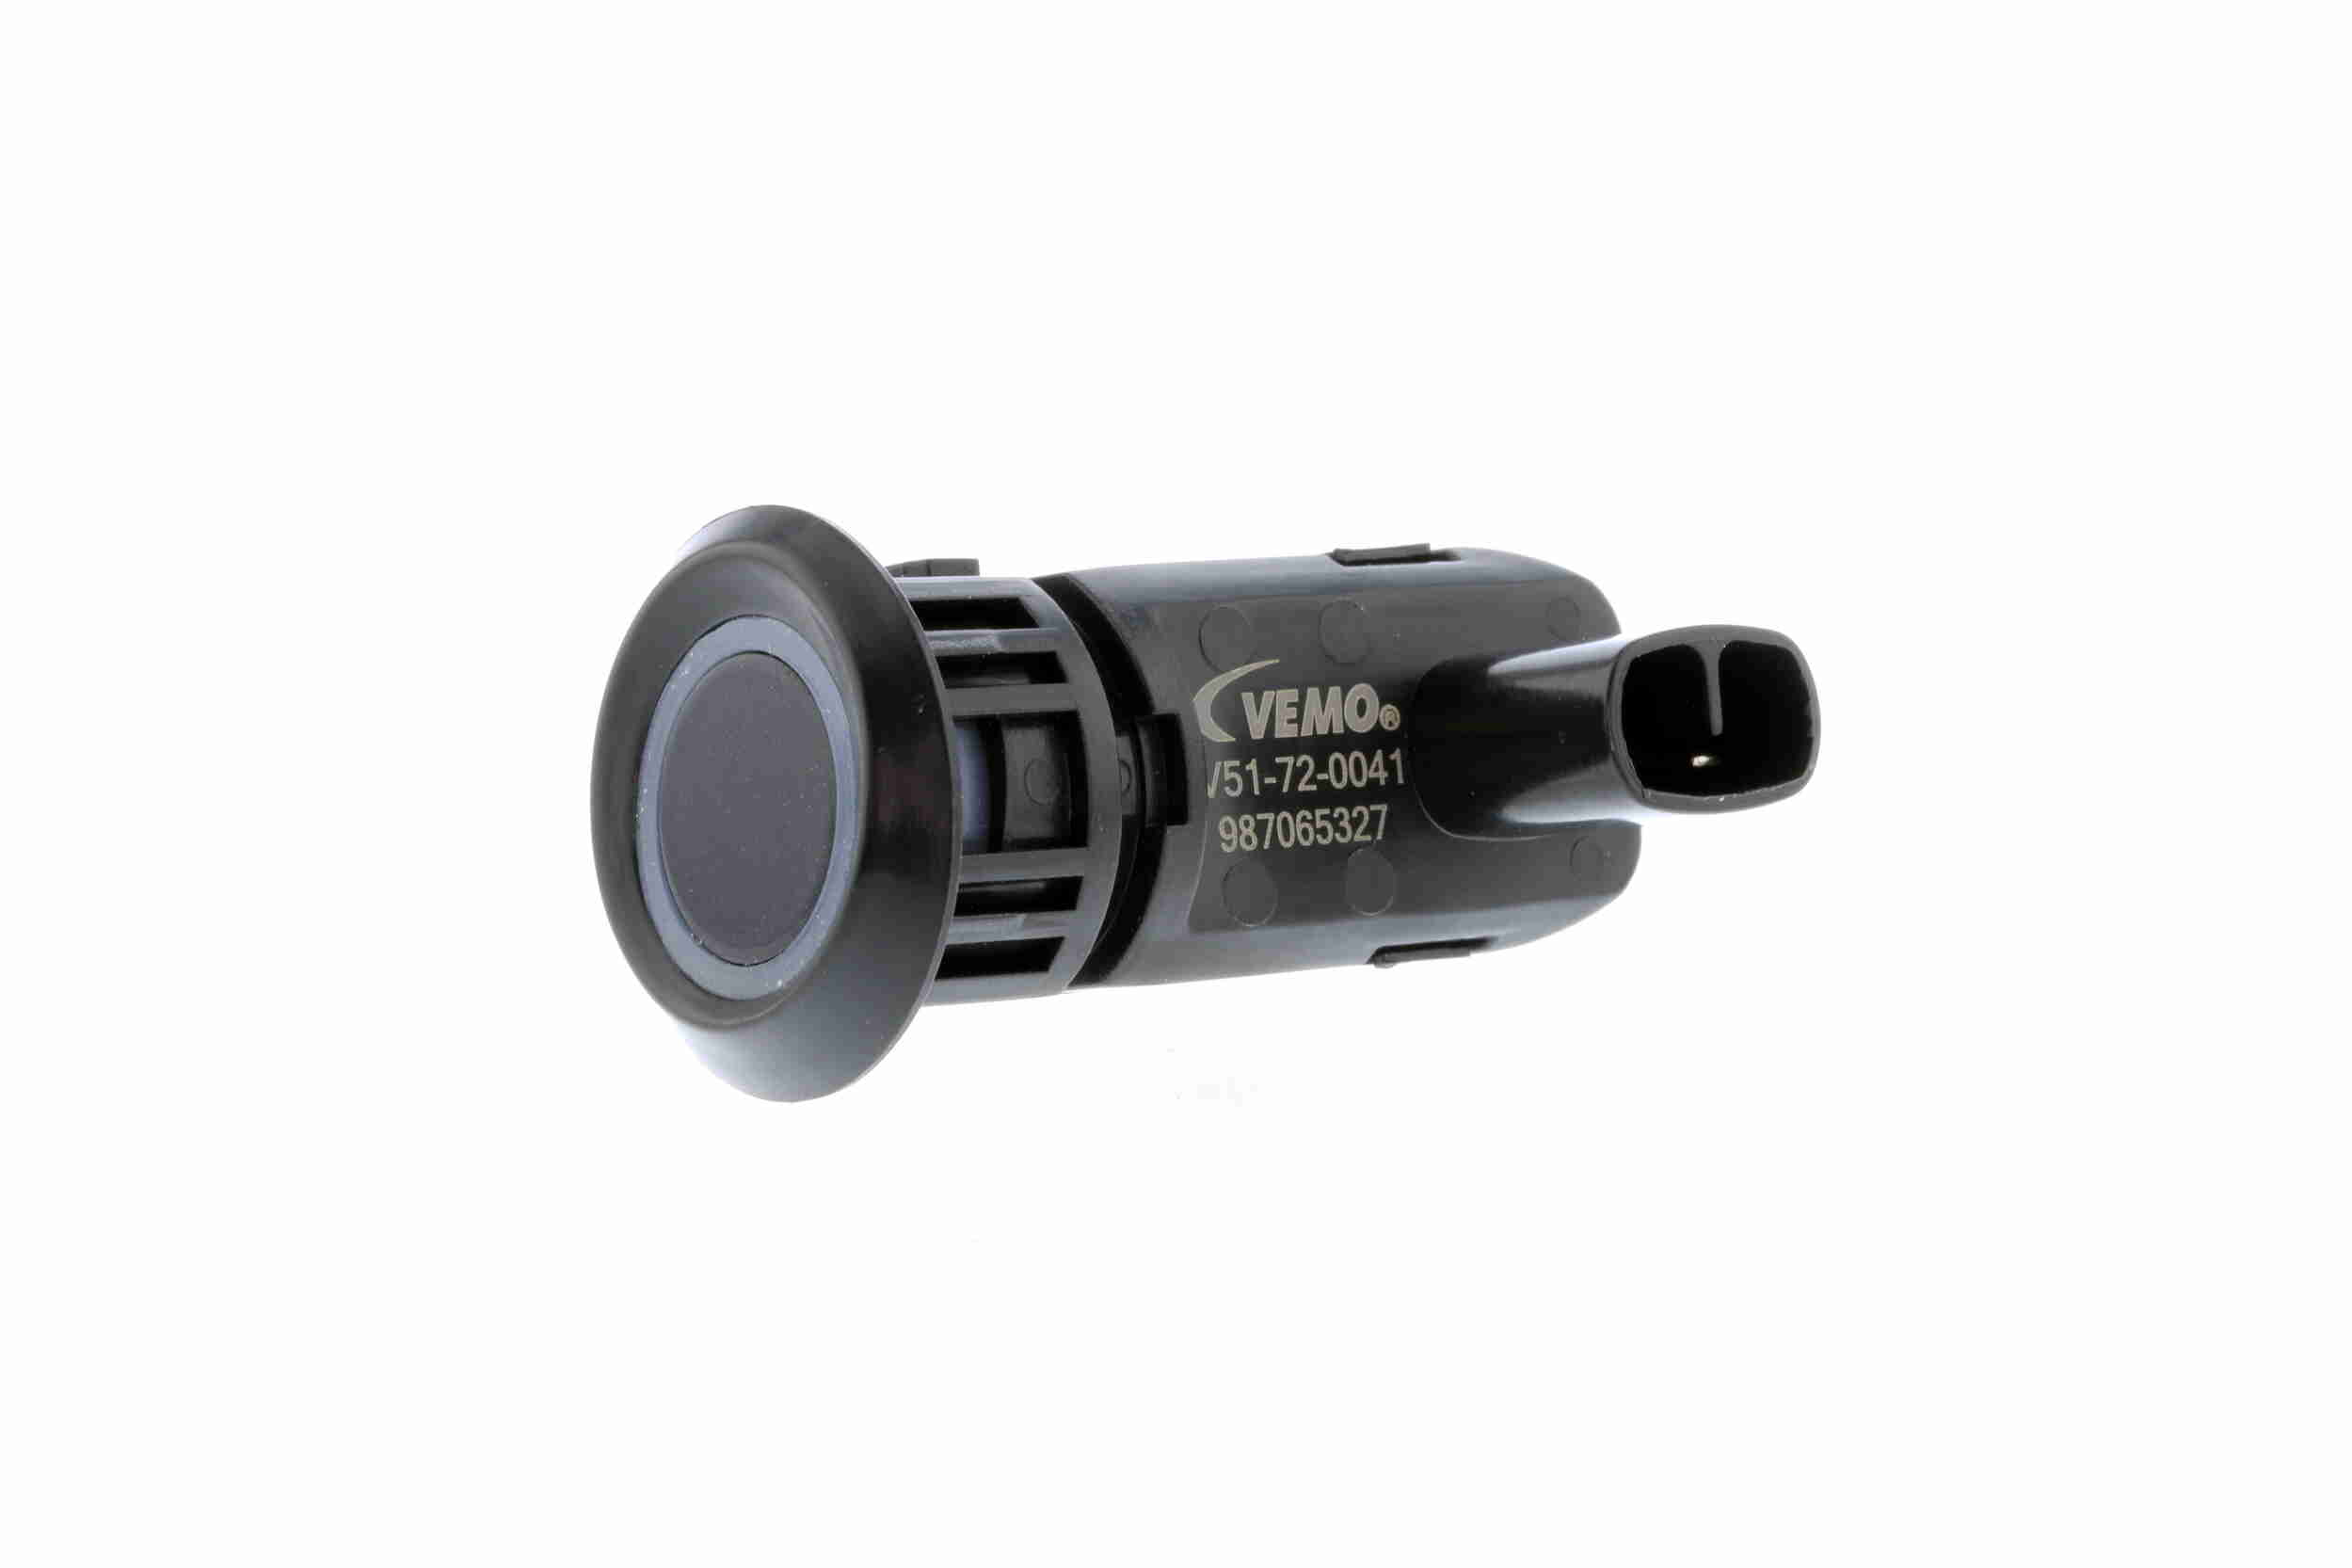 Vemo Parkeer (PDC) sensor V51-72-0041